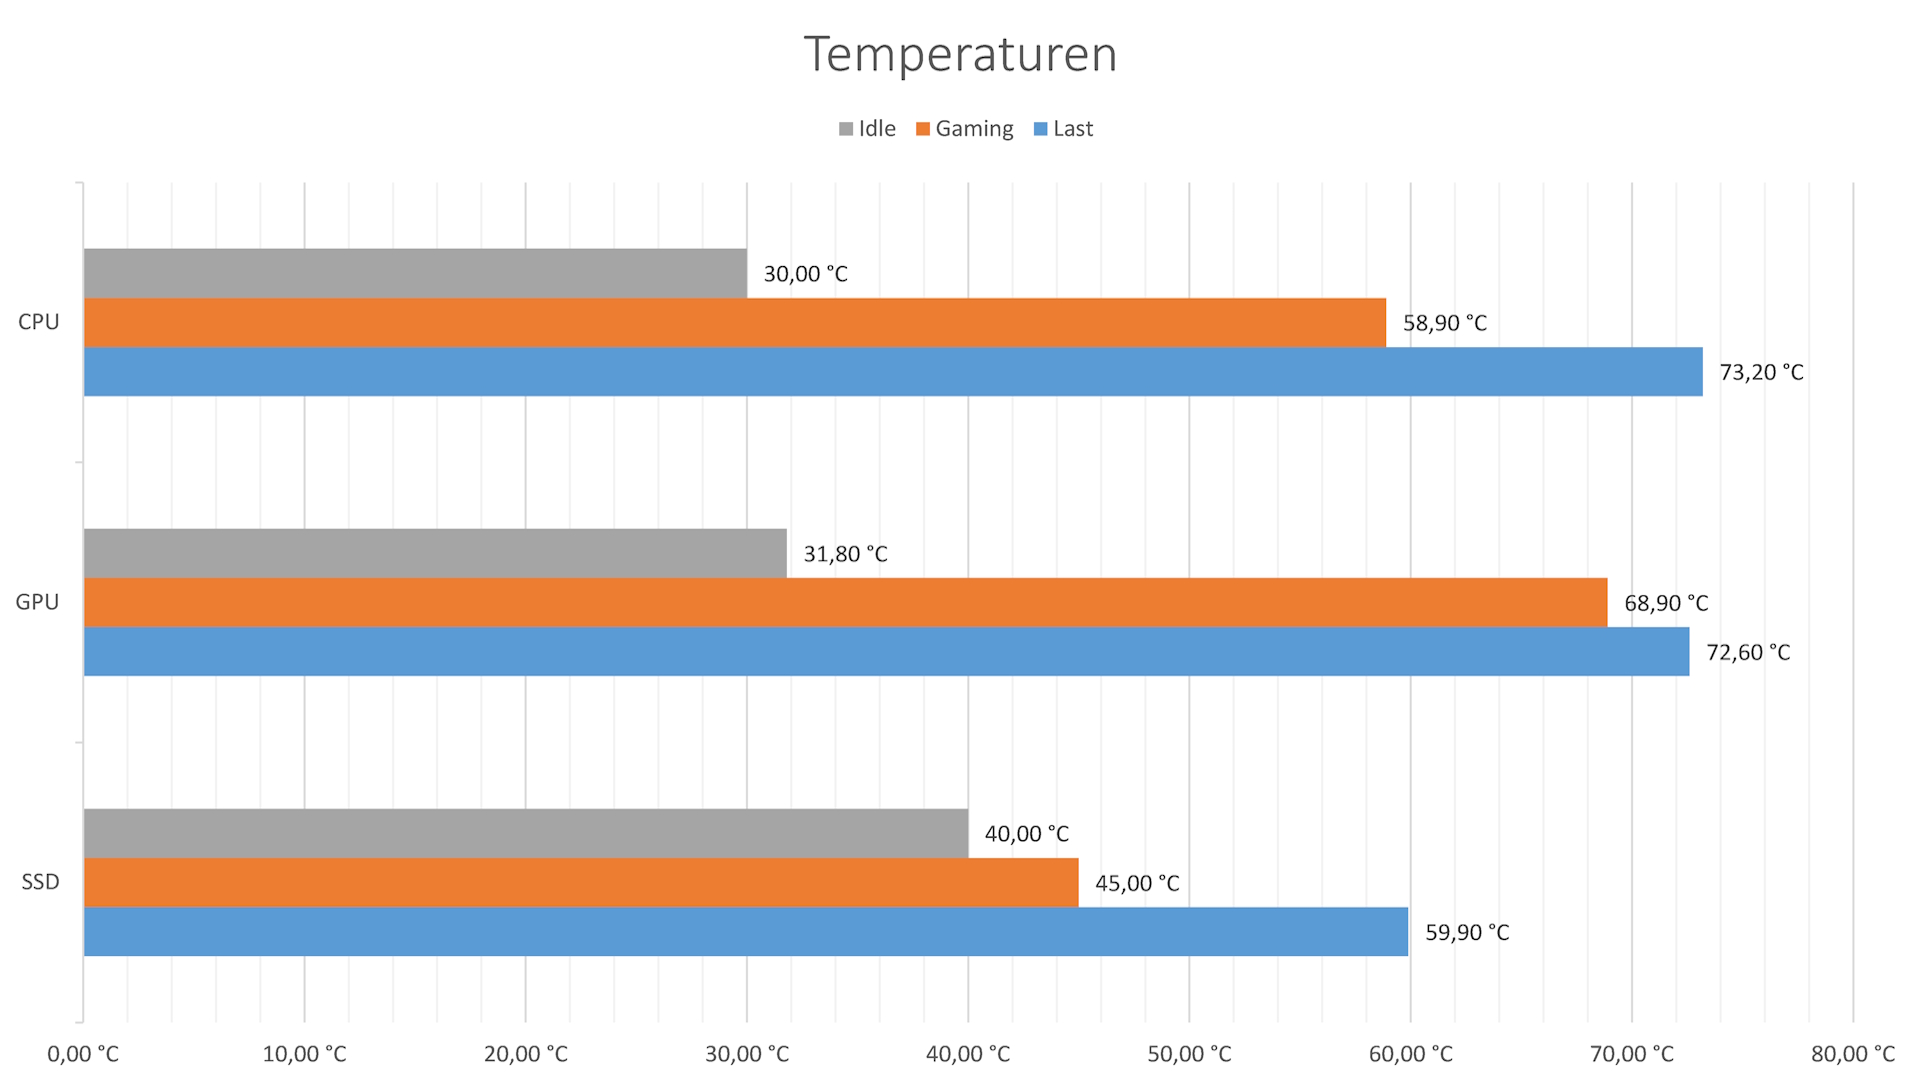 APNX C1 - Temperaturen.jpg